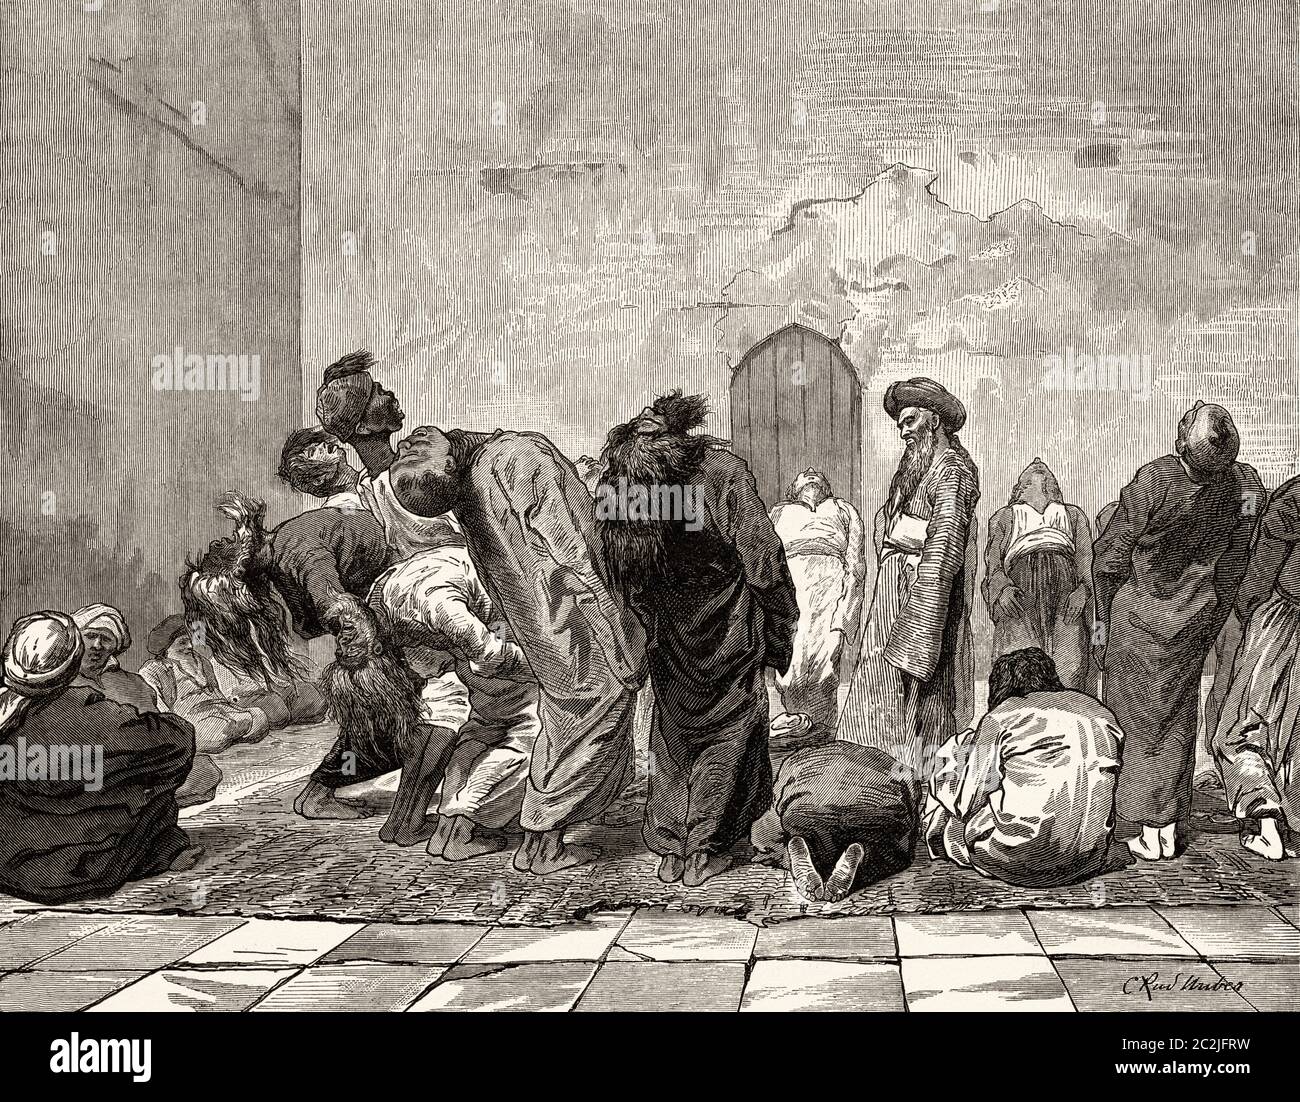 Wirbelnde Derwische im 19. Jahrhundert in Kairo, im alten Ägypten. Alte Illustration aus dem 19. Jahrhundert, El Mundo Ilustrado 1880 Stockfoto